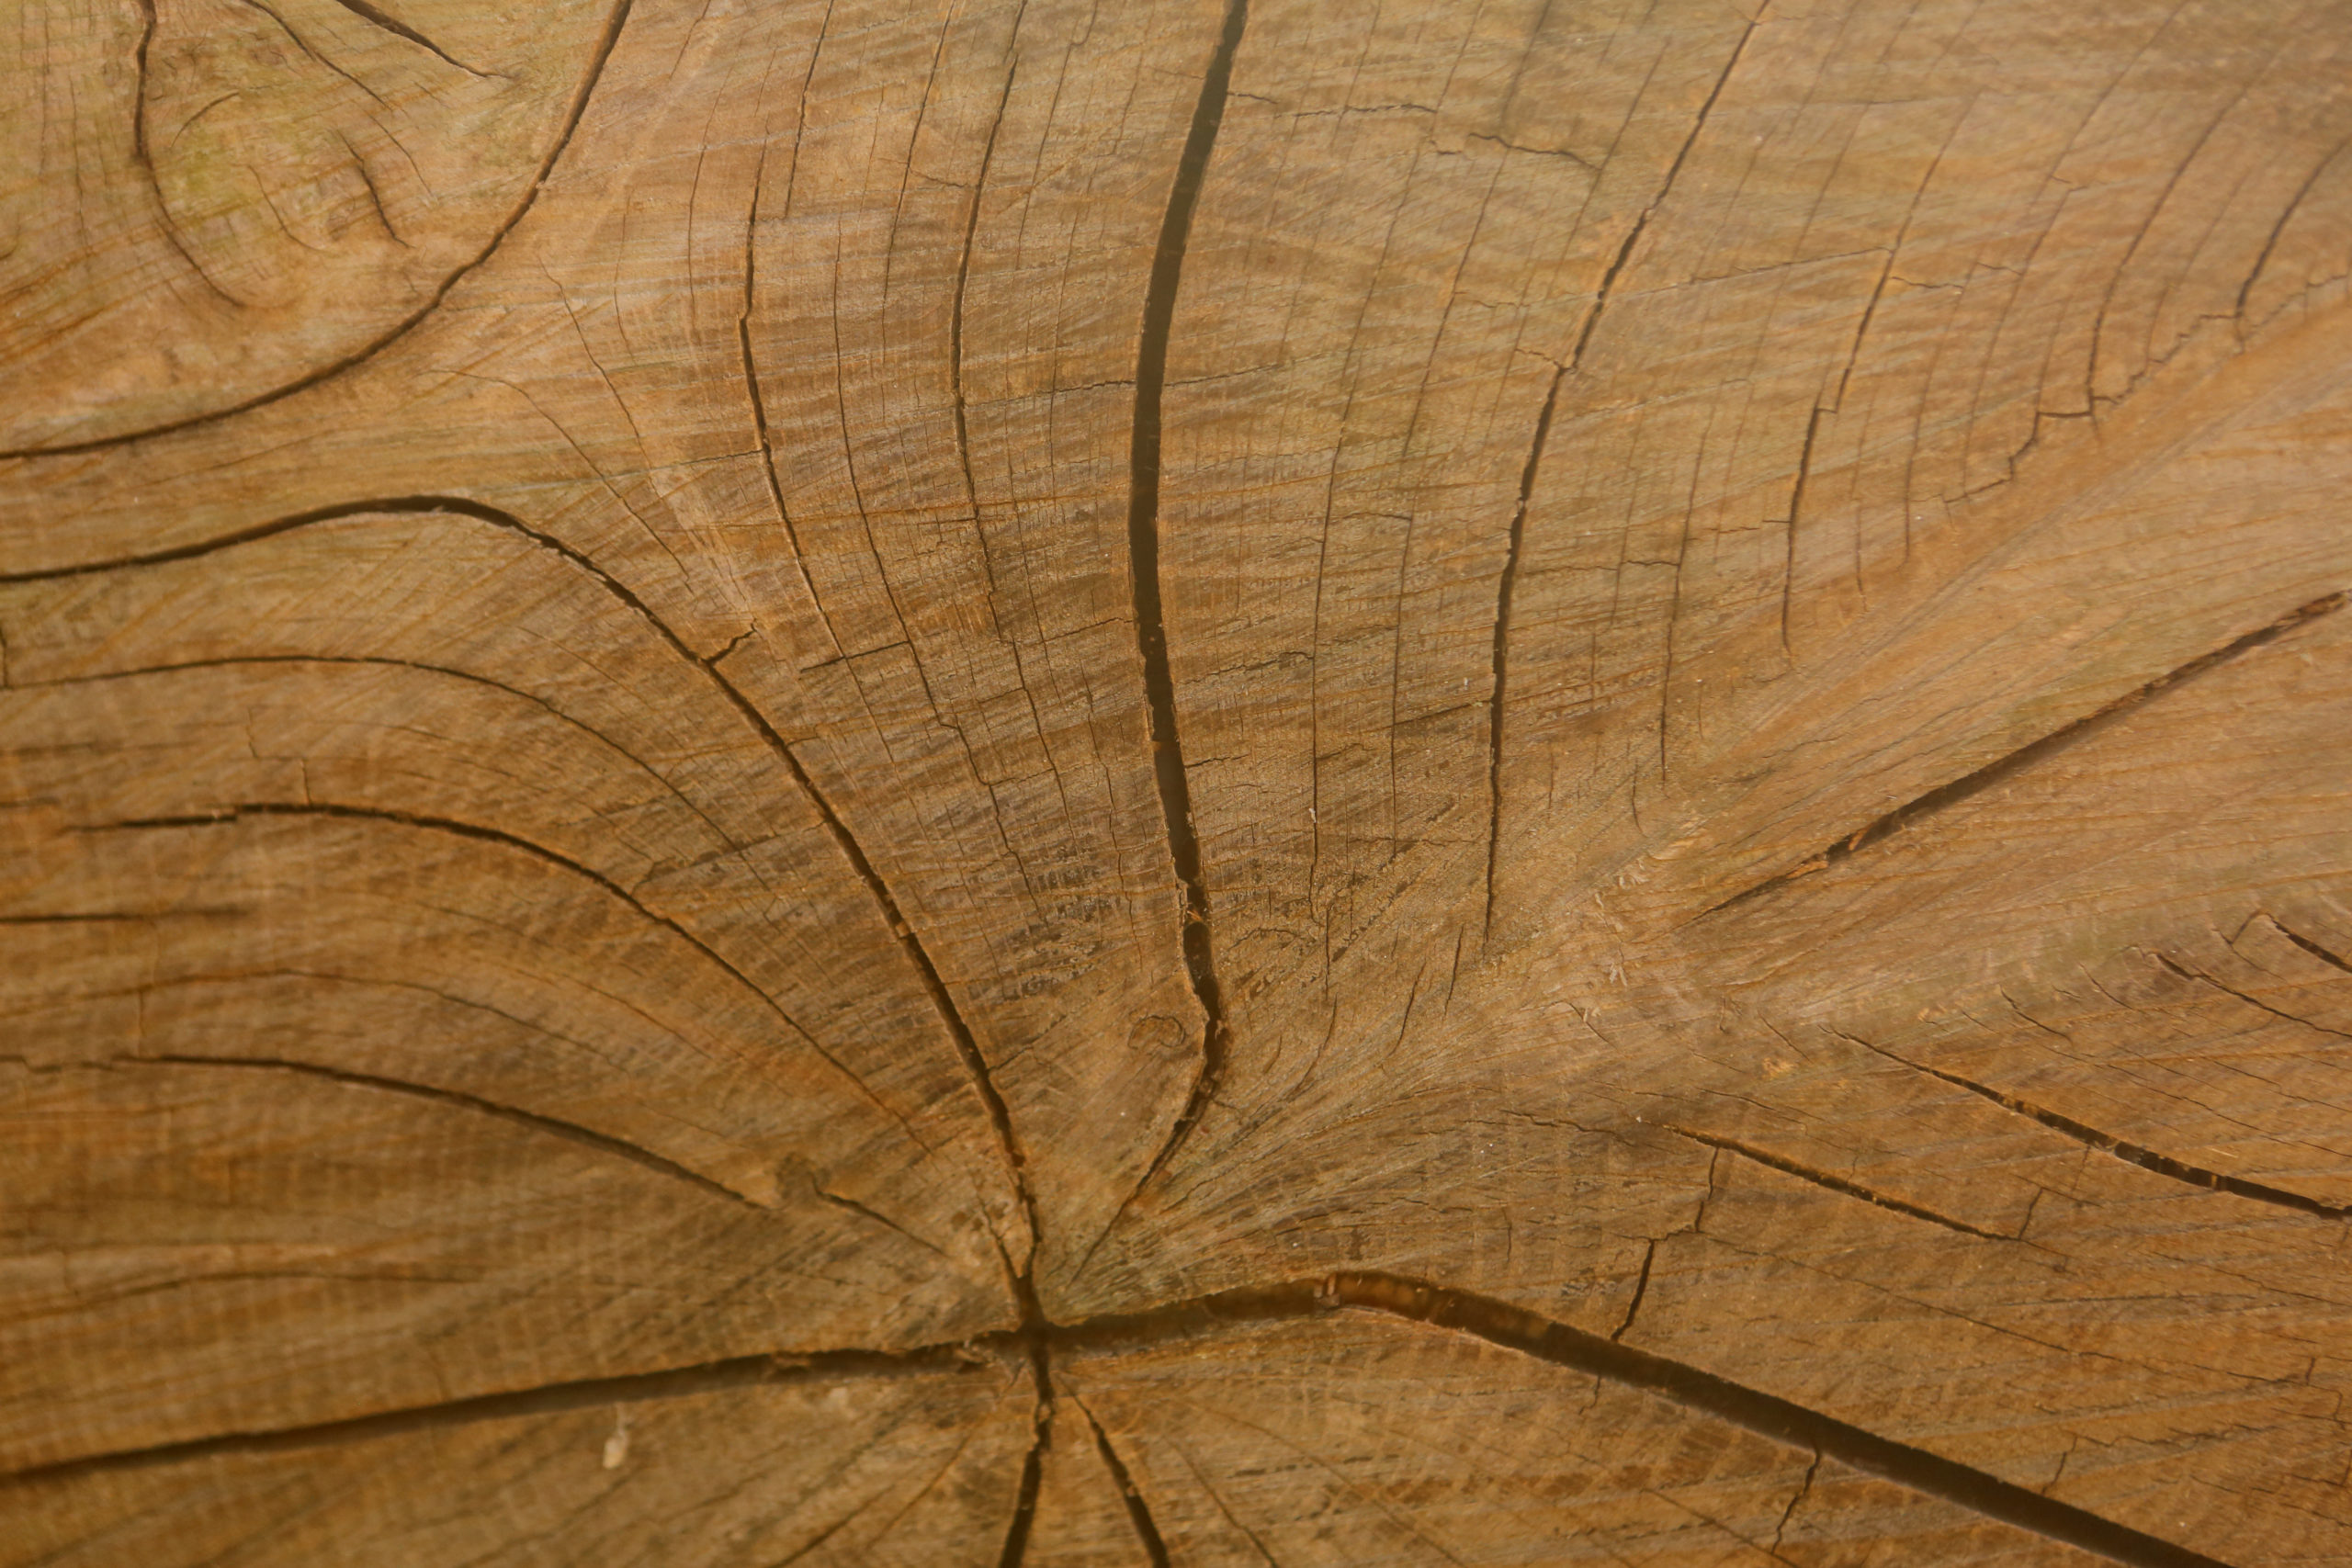 NWA’s circular economies: Keeping lumber in the loop